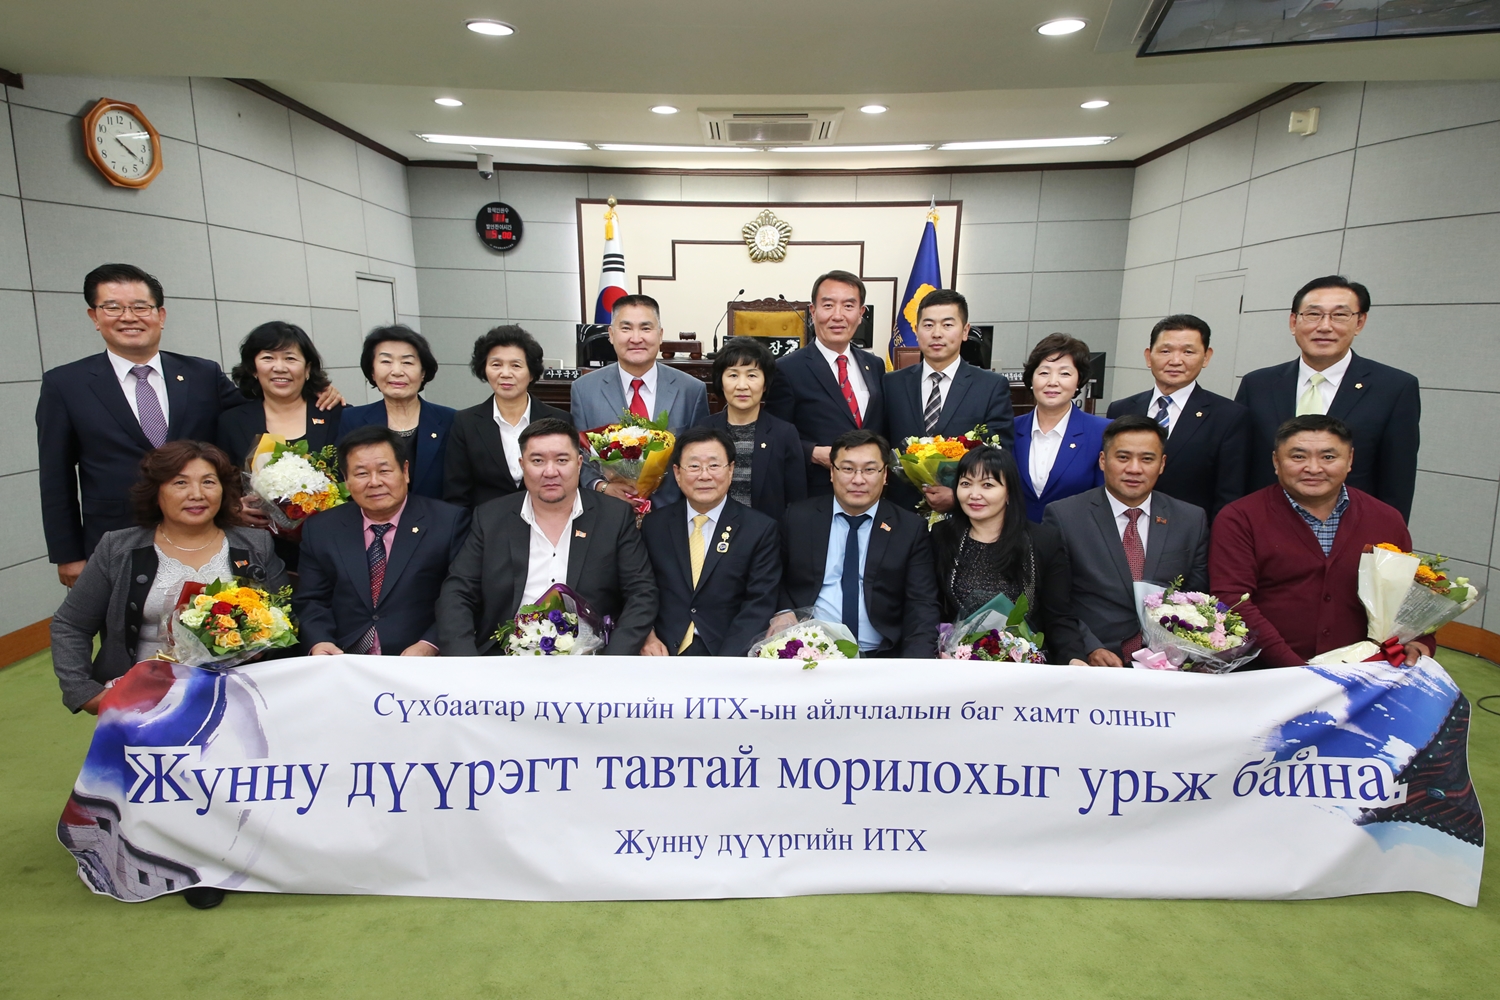 몽골 수흐바타르 구의회, 종로구의회 방문(새창)